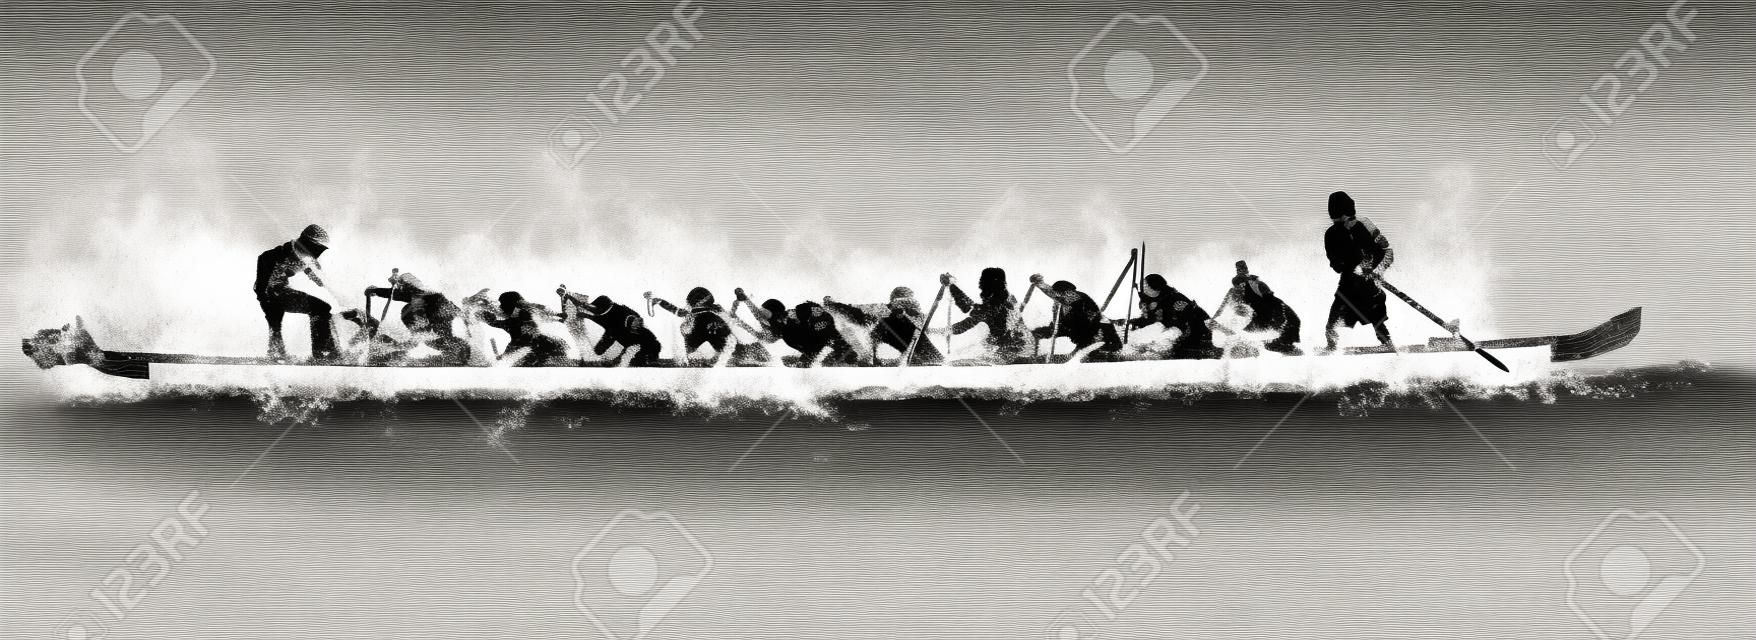 illustration d'un bateau de dragon dans l'action, en noir et blanc sur fond blanc